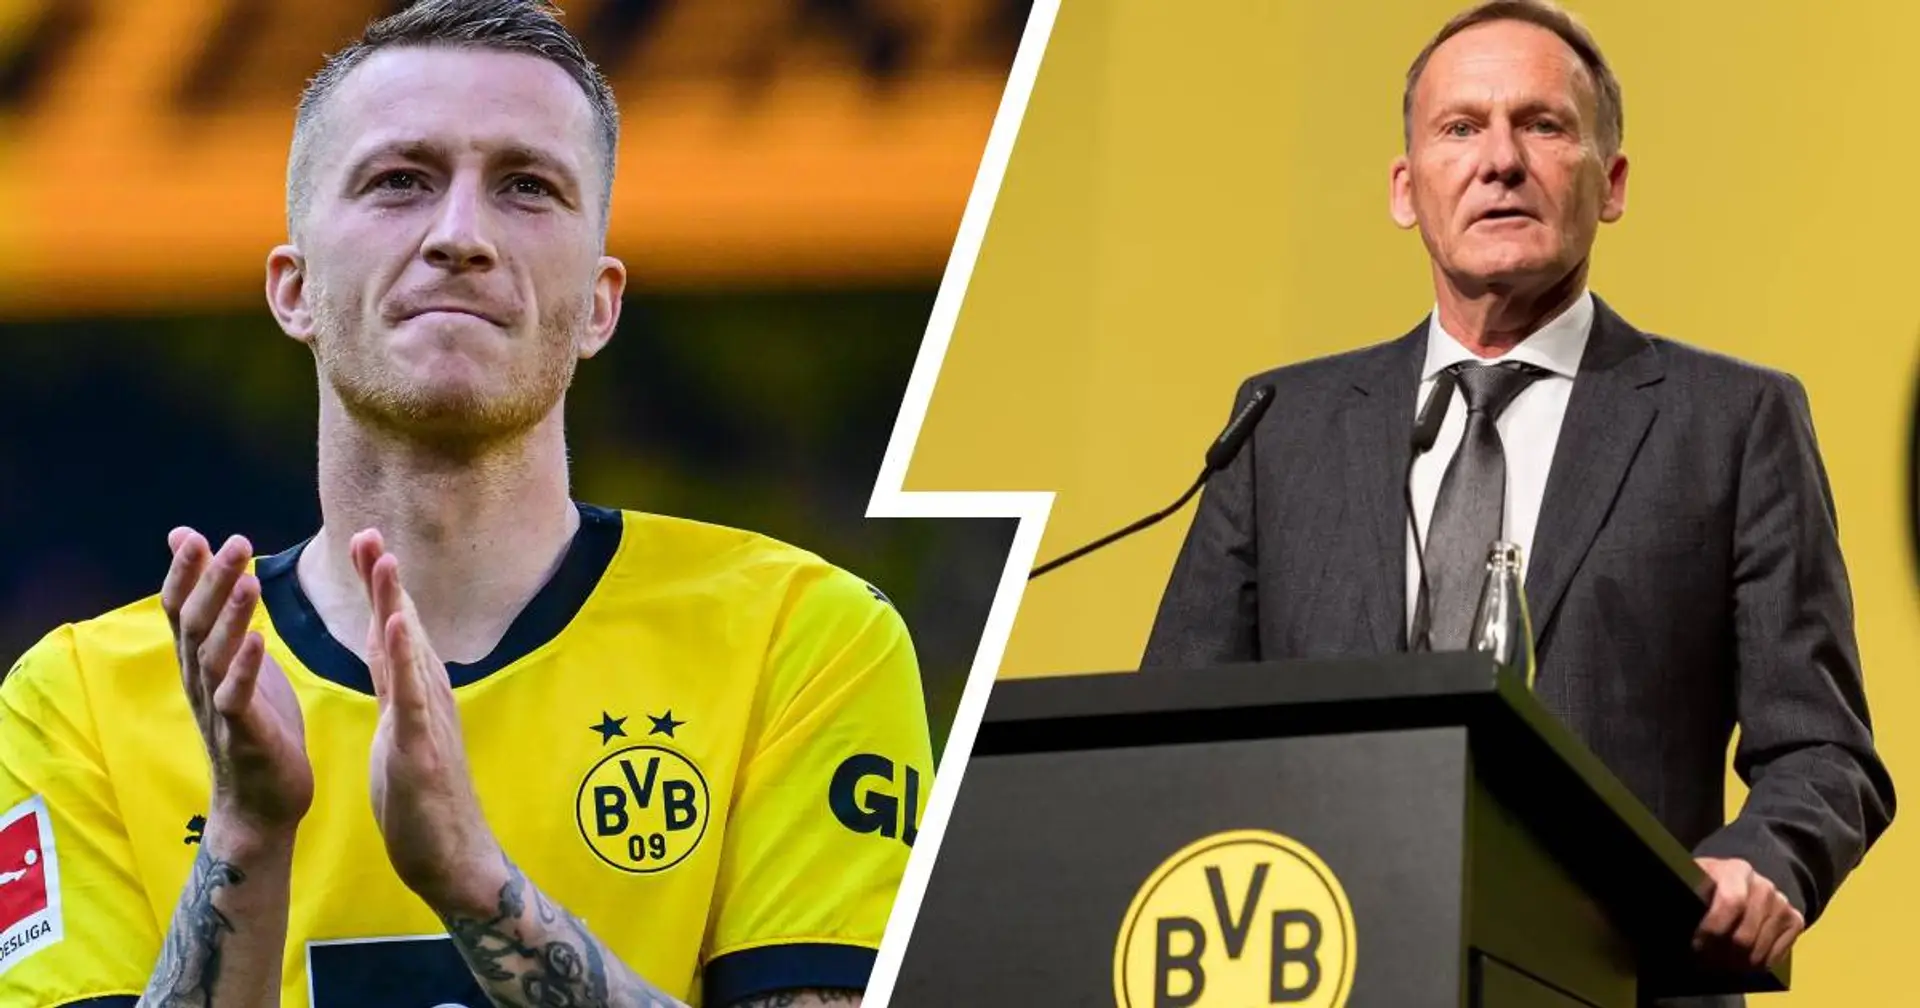 Watzke wünscht sich Reus' Rückkehr zum BVB nach Karriereende: "Hier in Dortmund warten genug spannende Aufgaben auf ihn"